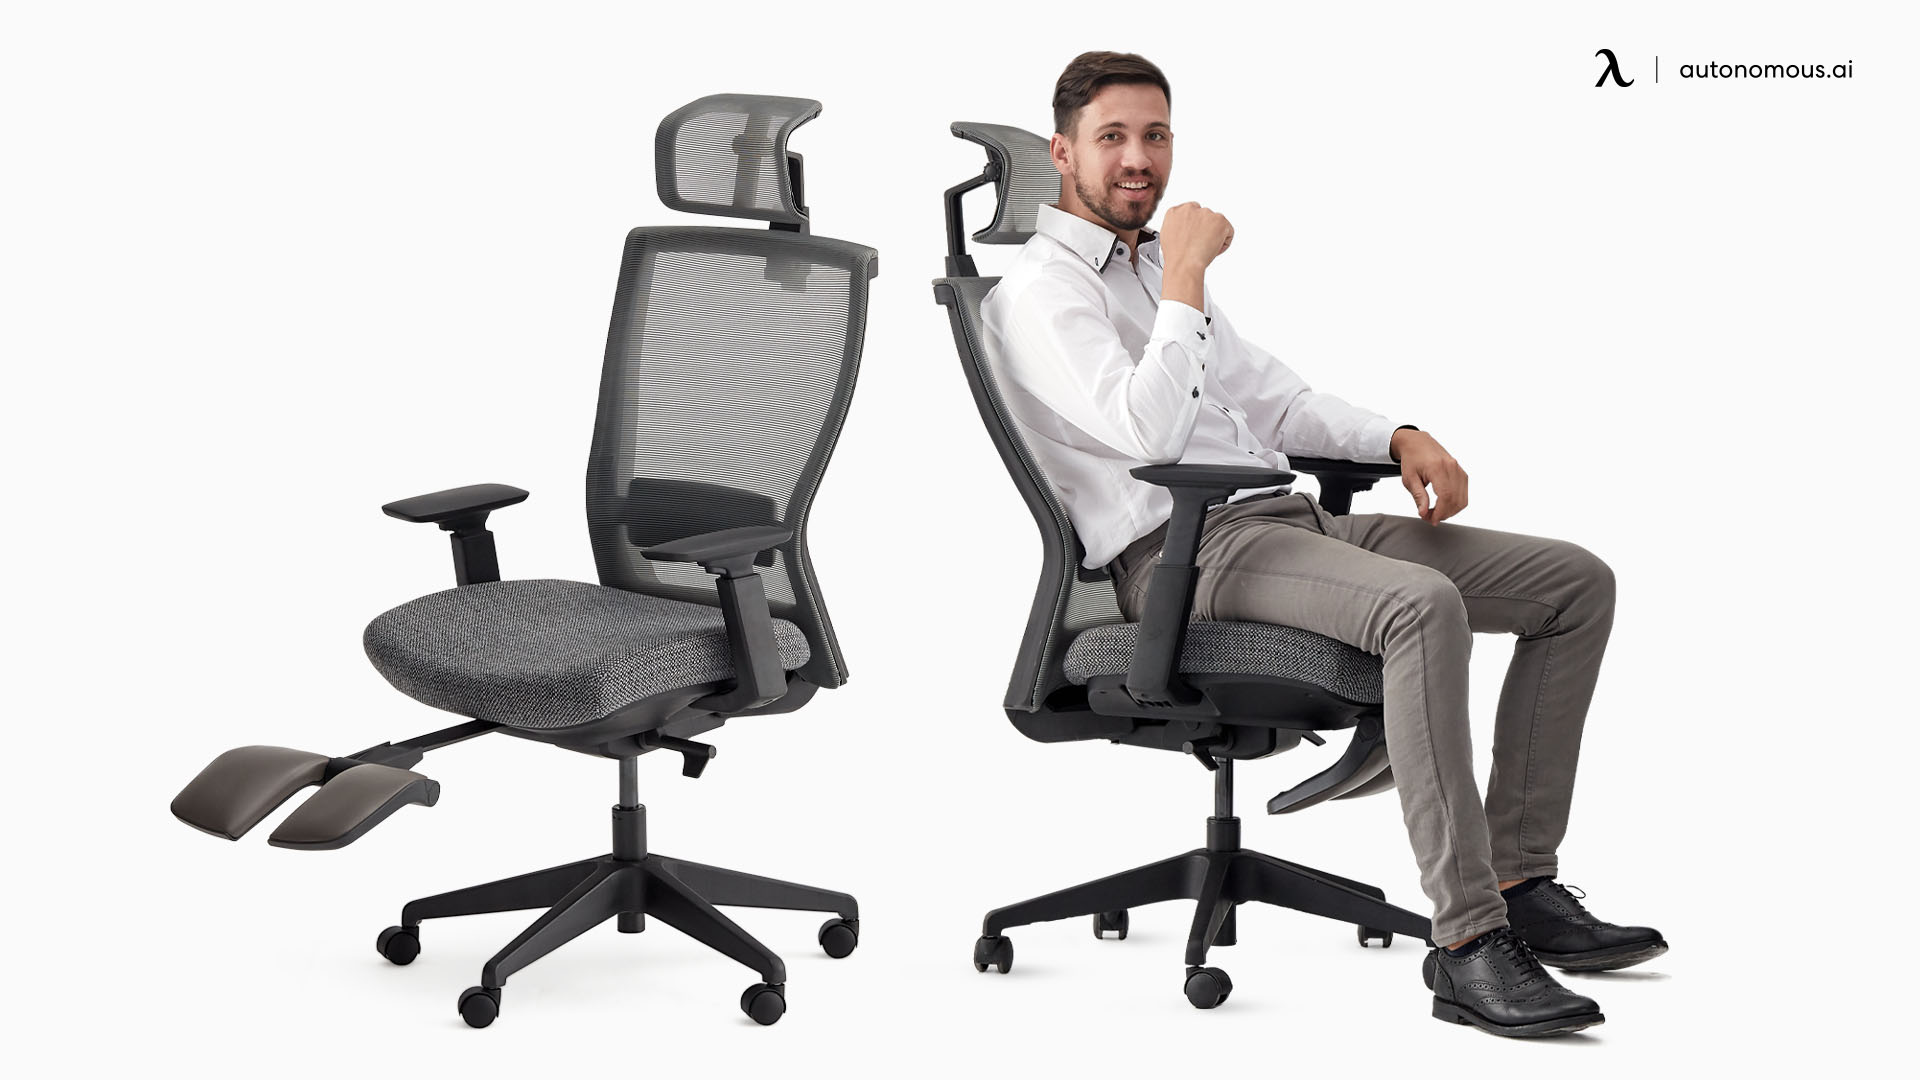 ErgoChair Recline best office chair for tailbone pain